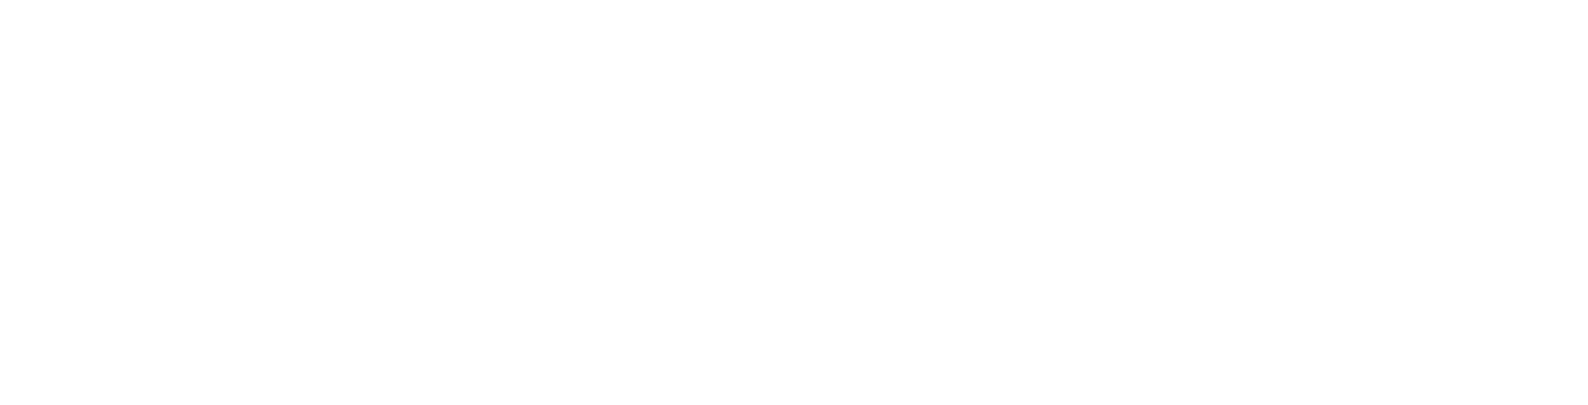 Beacon Roofing Supply Logo groß für dunkle Hintergründe (transparentes PNG)